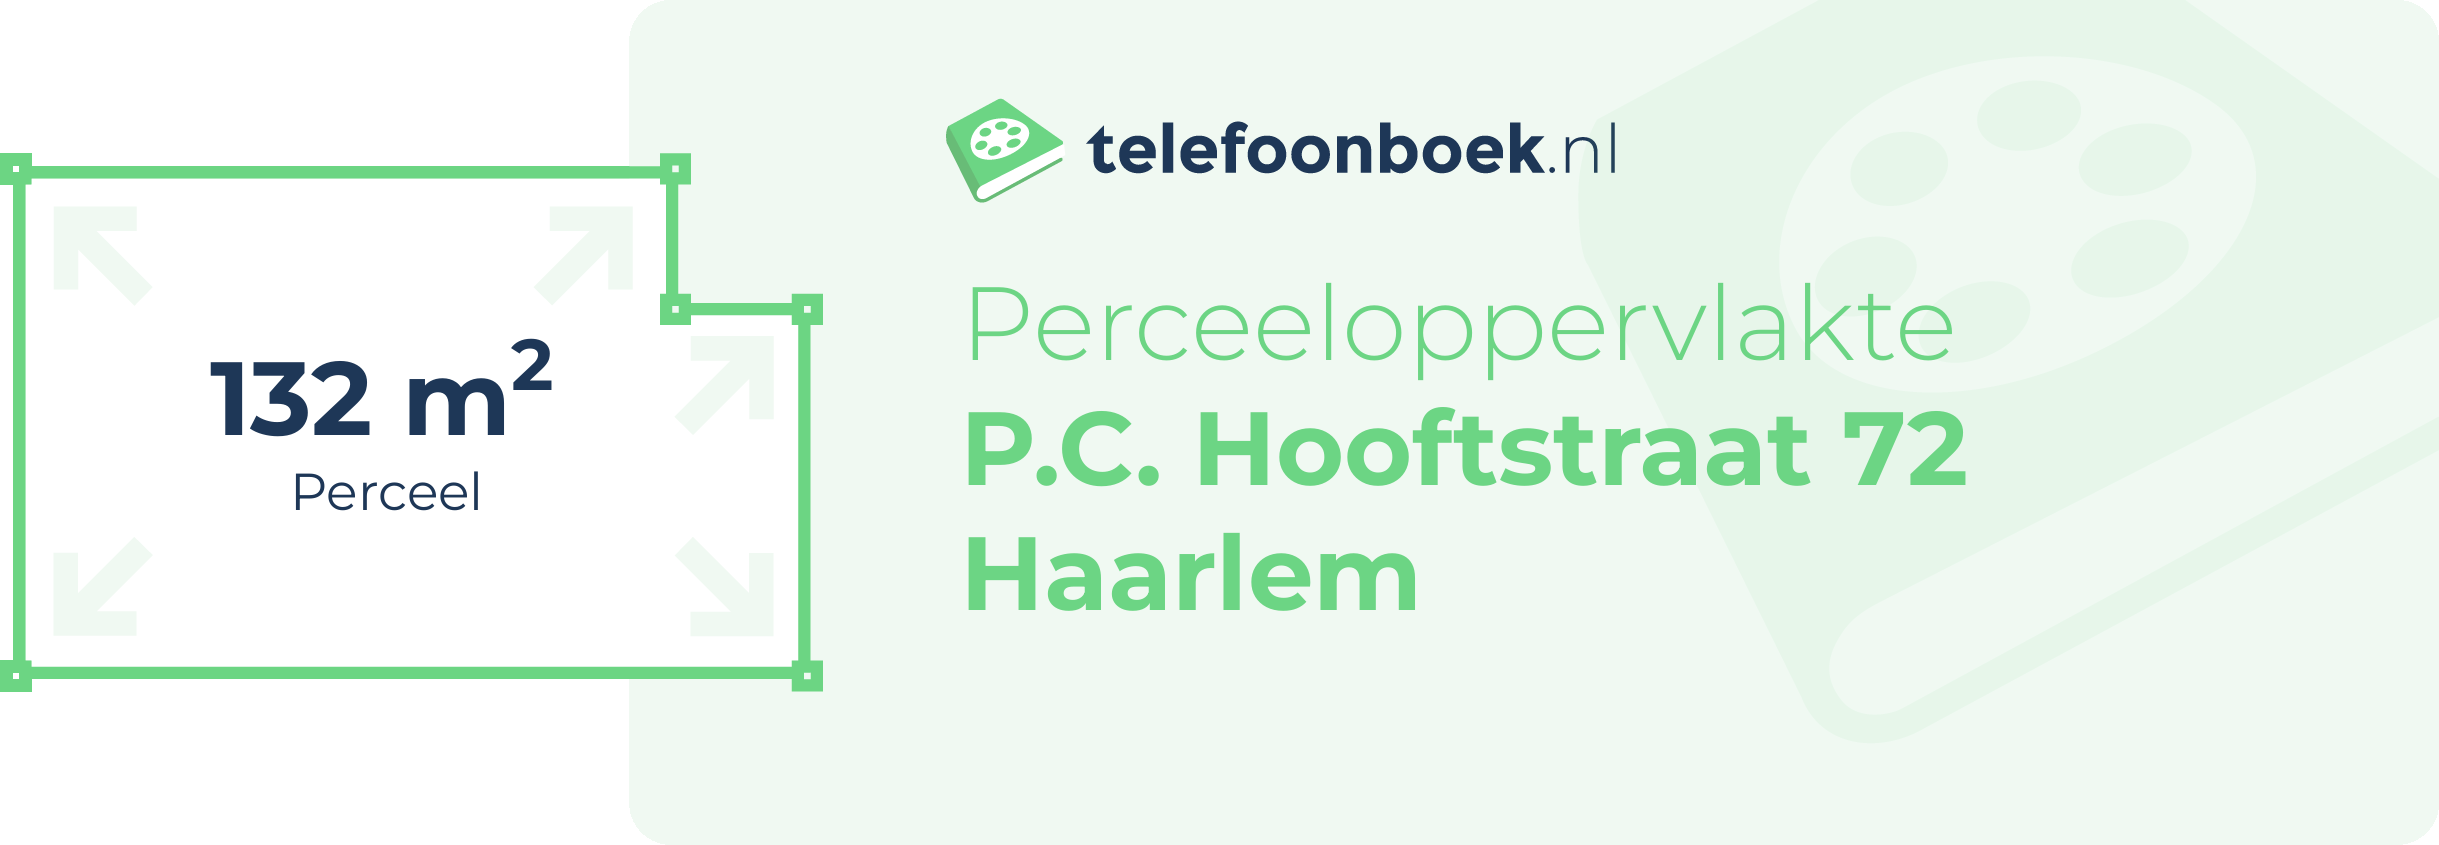 Perceeloppervlakte P.C. Hooftstraat 72 Haarlem